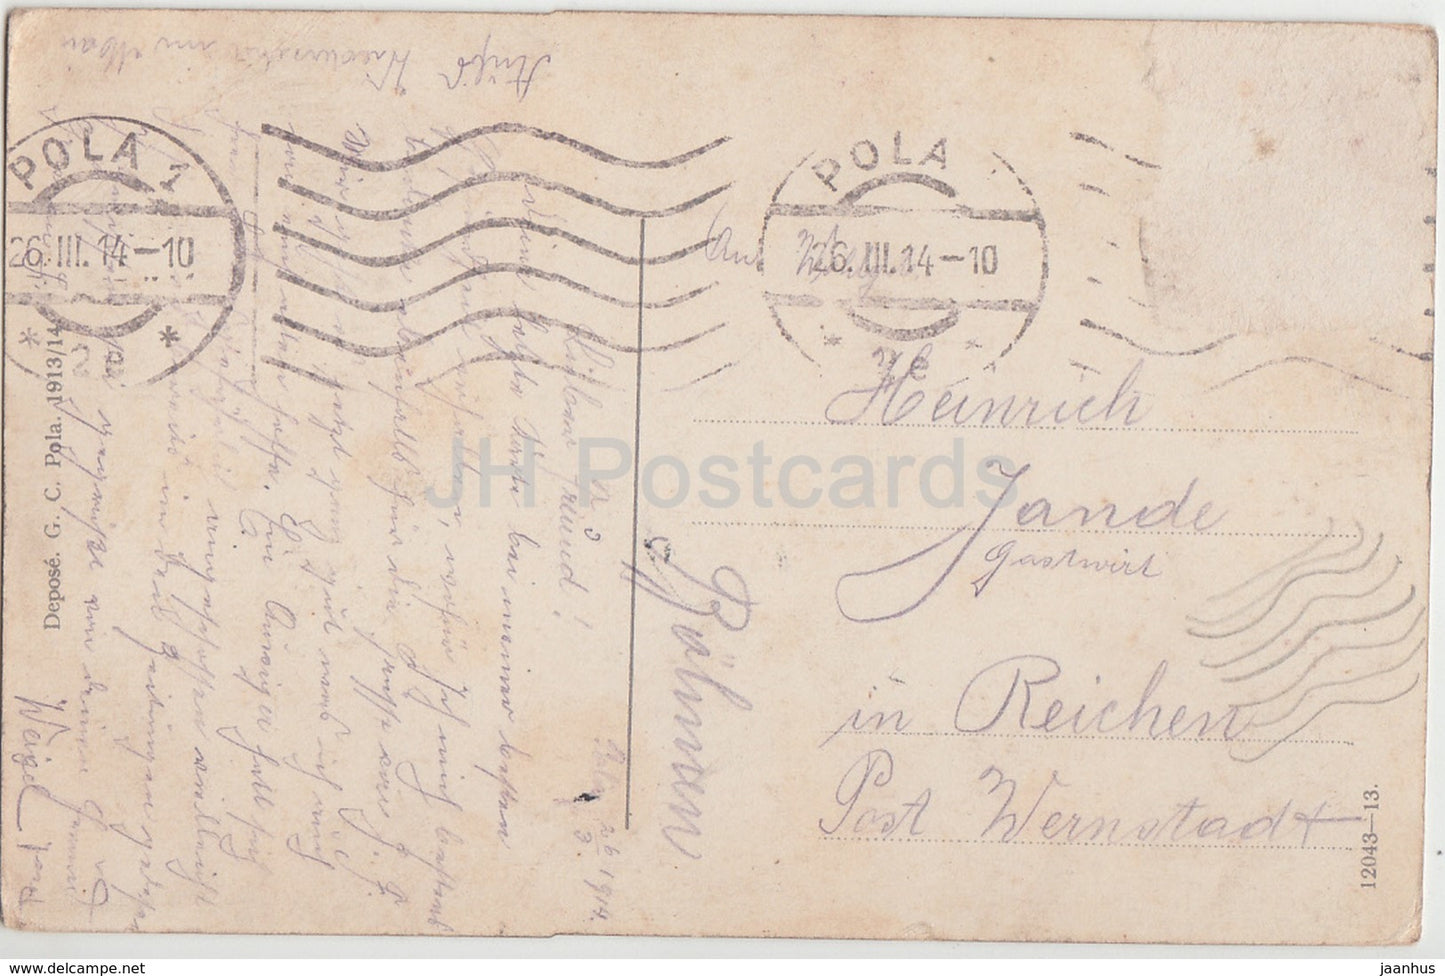 Pola - panorama - riva - bateau à voile - carte postale ancienne - 1914 - Croatie - utilisé